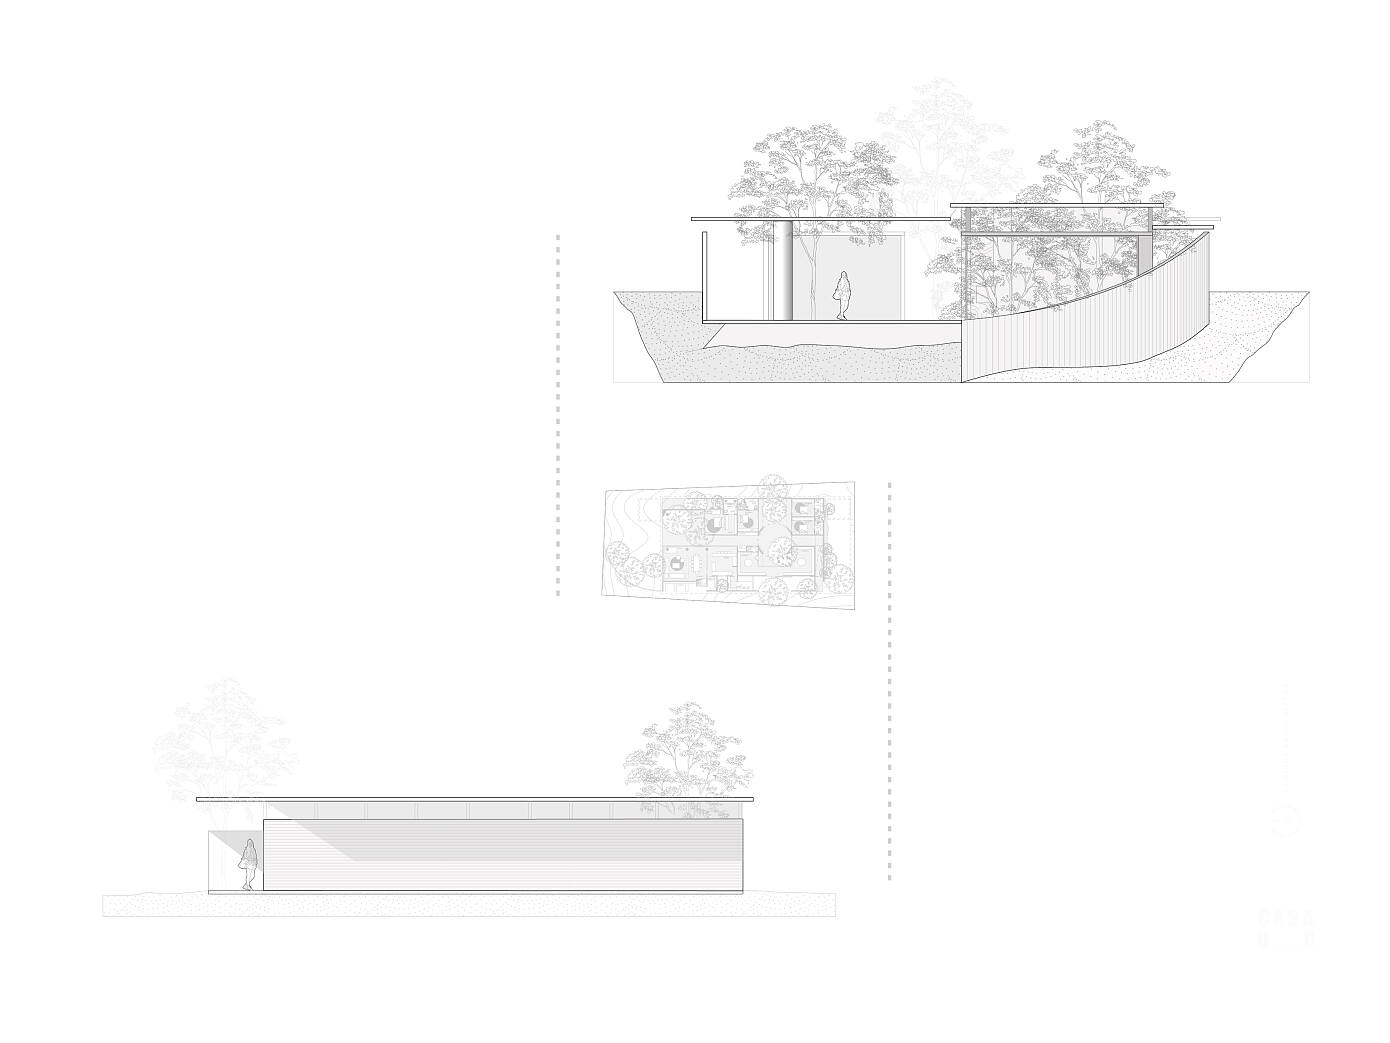 Casa UC by Daniela Bucio Sistos // Taller de Arquitectura y Diseño